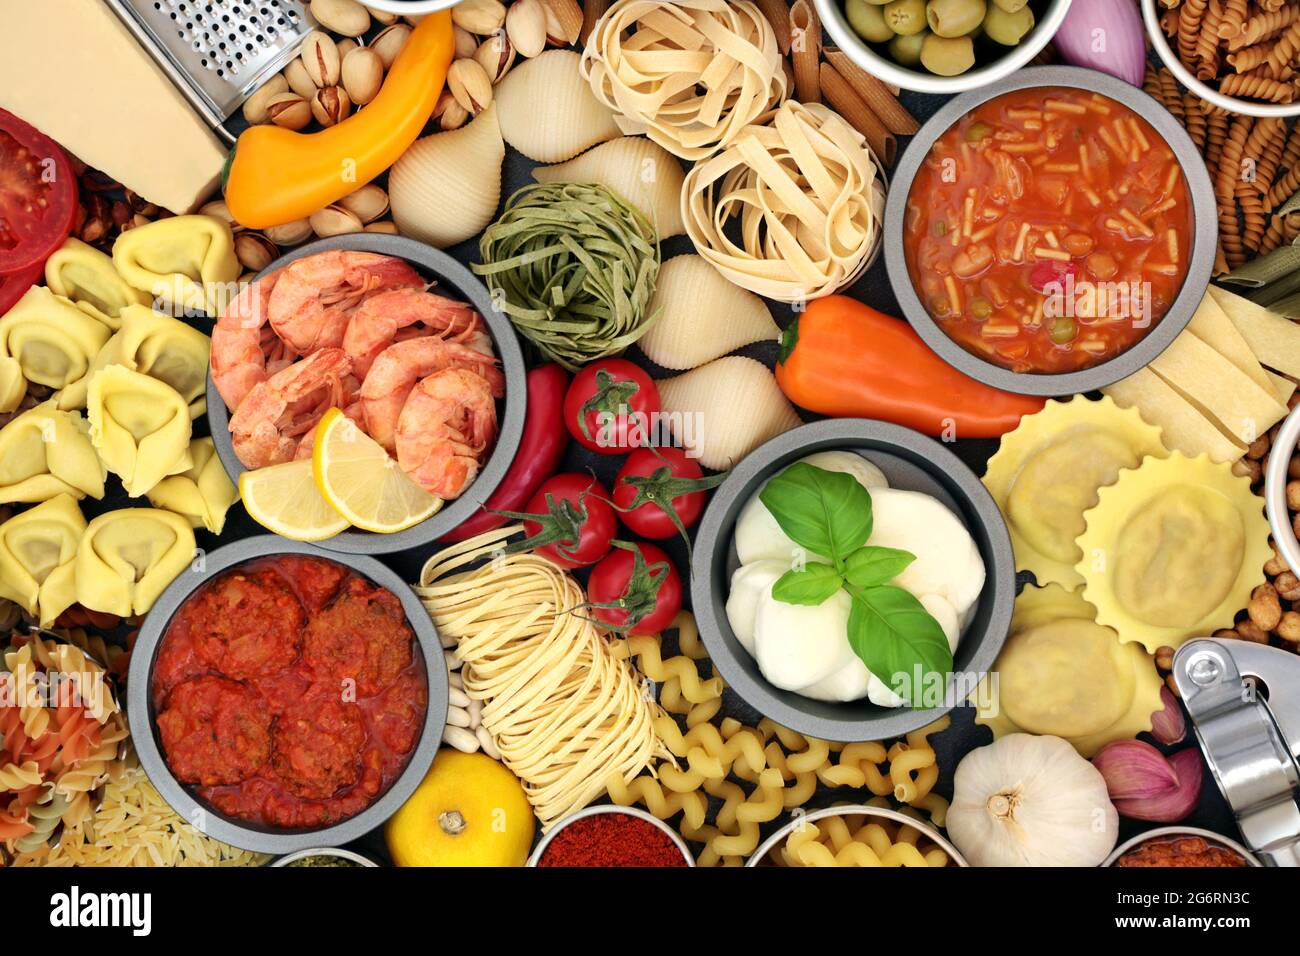 Alimentation saine italienne pour une alimentation équilibrée riche en antioxydants, anthocyanines, fibres, lycopène, oméga 3 et protéines. Banque D'Images